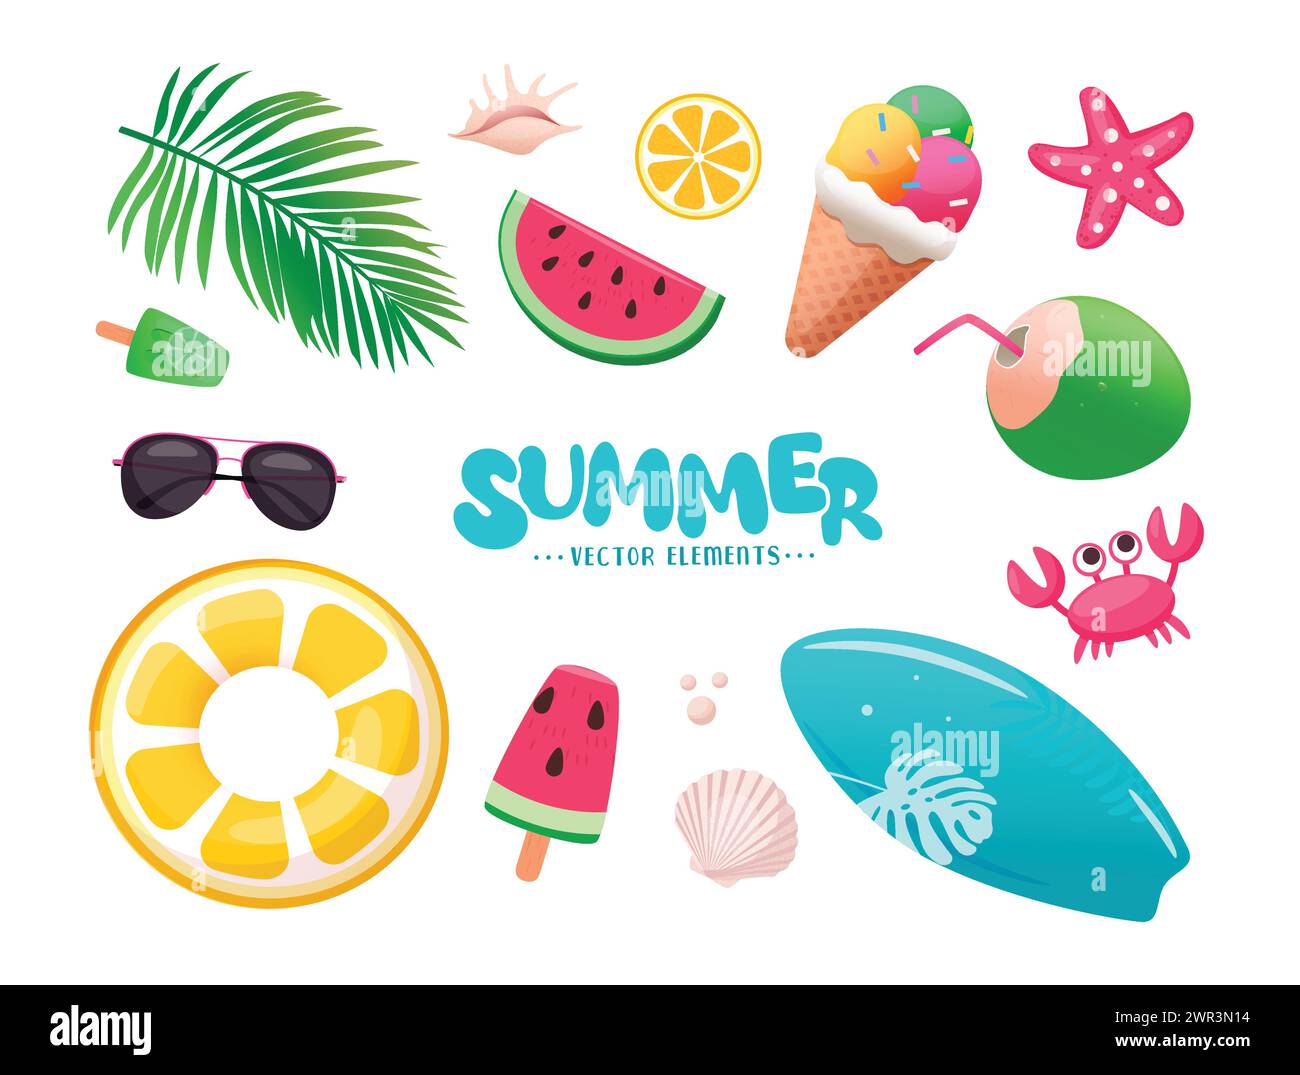 Design vettoriale Summer Tropical Elements. Elementi da spiaggia estivi come anguria, gelato, galleggianti, tavola da surf e decorazioni con icone di cocco isolate Illustrazione Vettoriale